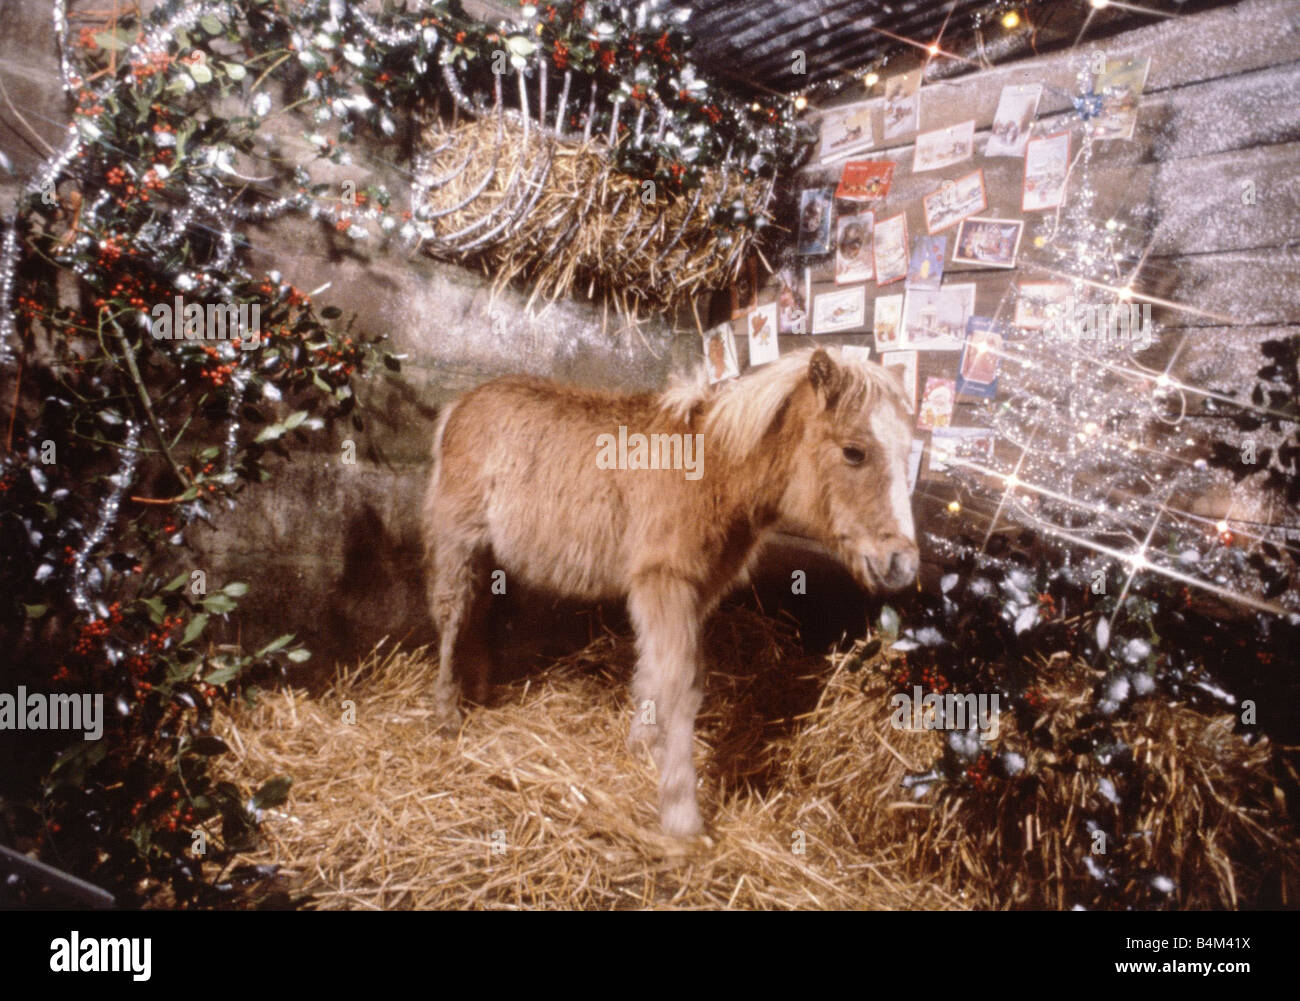 Sonntag Spiegel Pony Lucky abgebildet in einem Weihnachts-Stall Einstellung Dezember 1982 Tier Pferd festliche Krippe feste Lichter Stockfoto